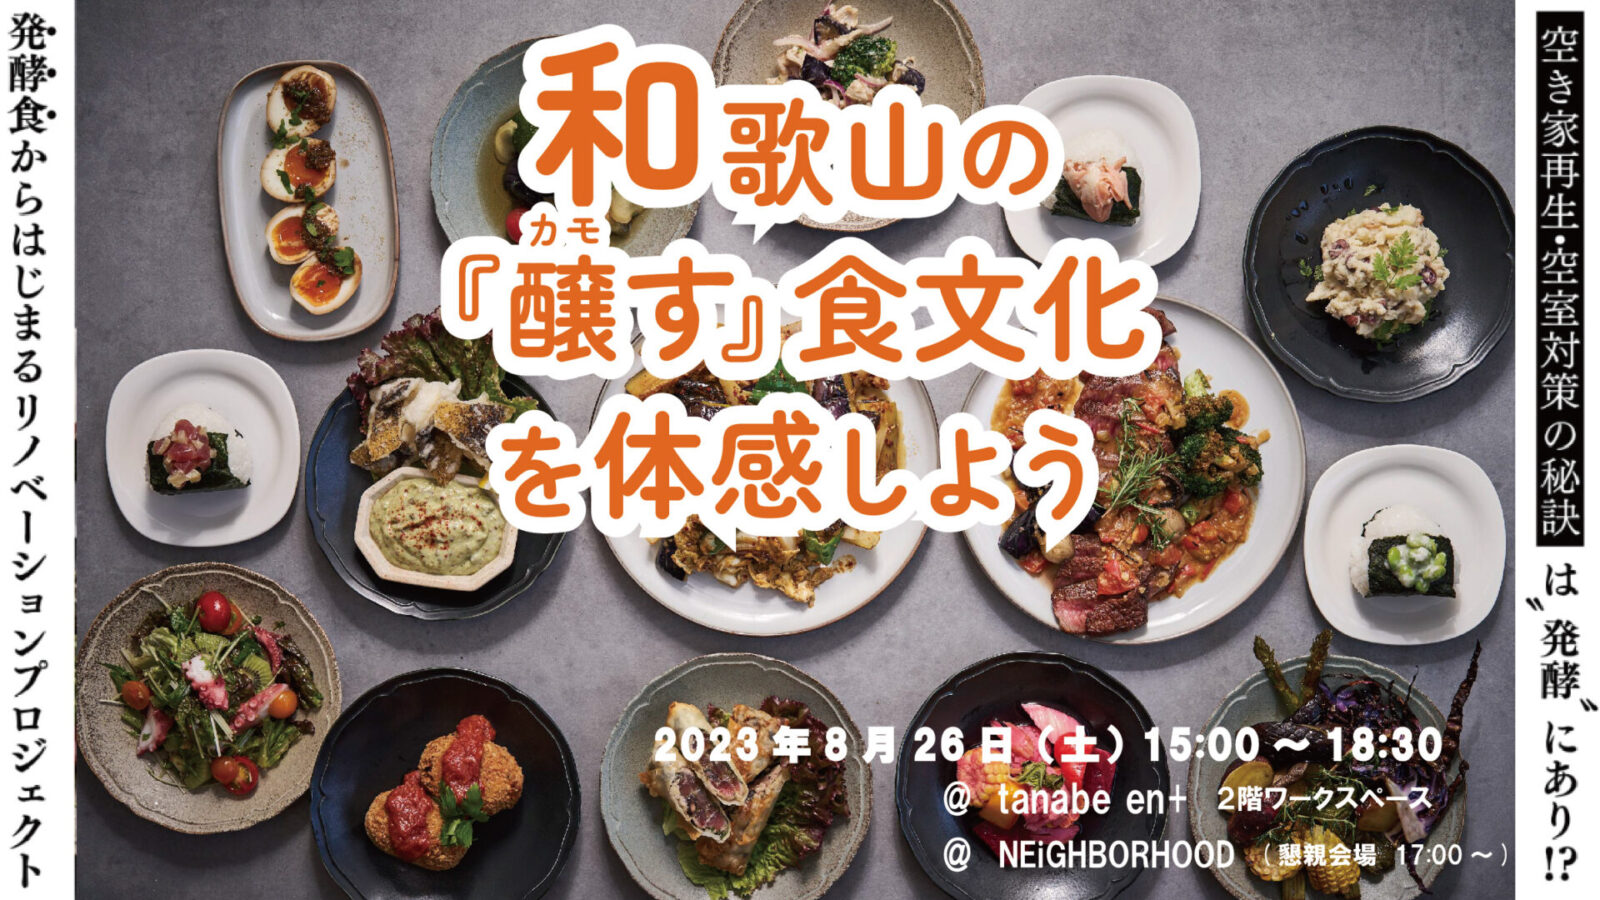 和歌山の『醸す』食文化を体感しよう